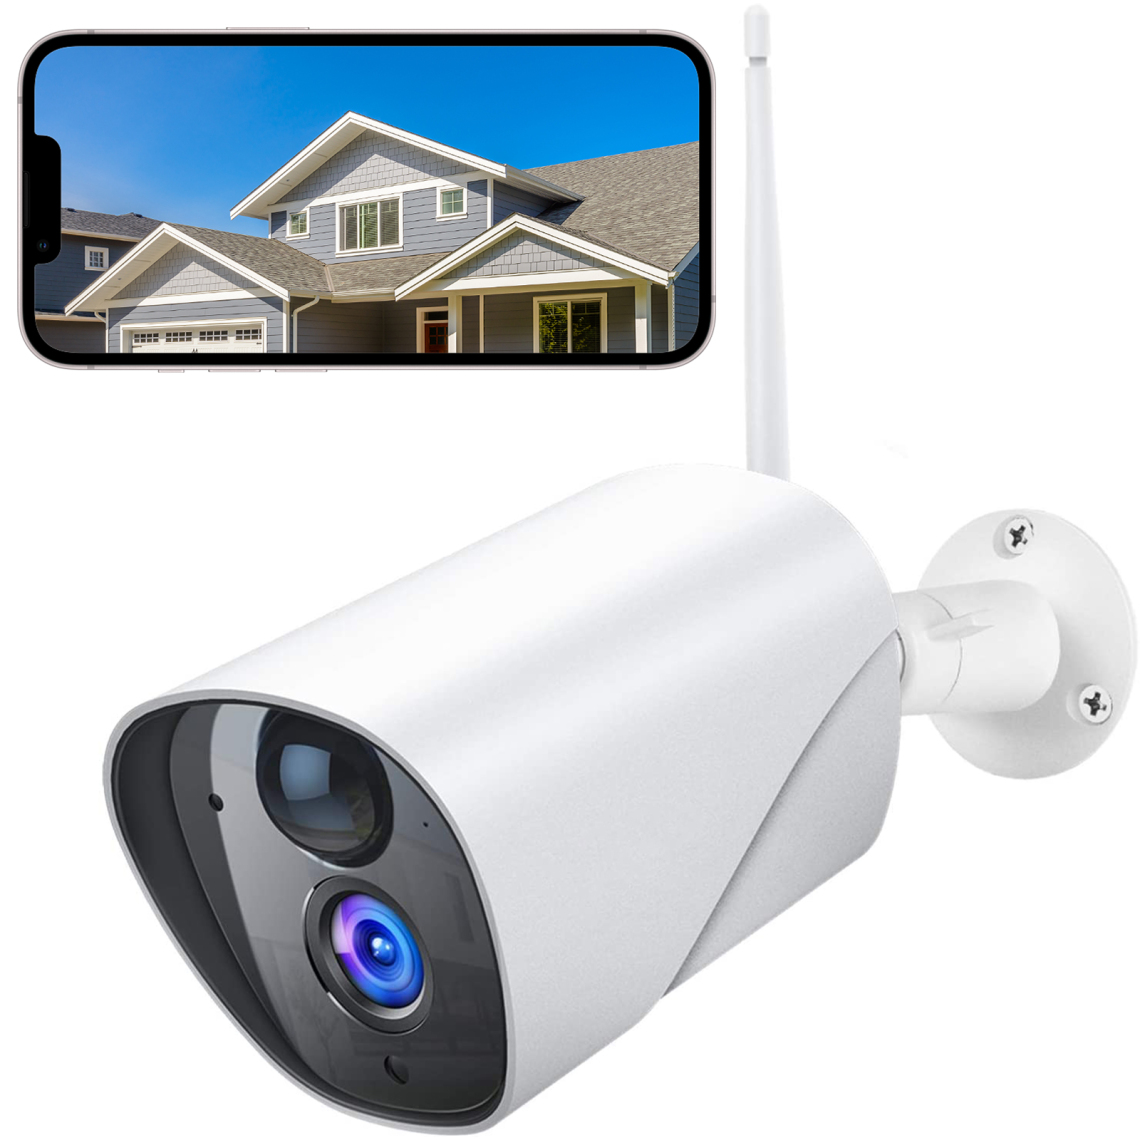 Victure - Victure Caméra Surveillance Extérieure IP65 Imperméabiliser PC750 1080P avec Détection de Mouvement IRP, Audio Bidirectionnel, Vision Nocturne et Stockage sur Carte Cloud/Micro SD - Caméra de surveillance connectée